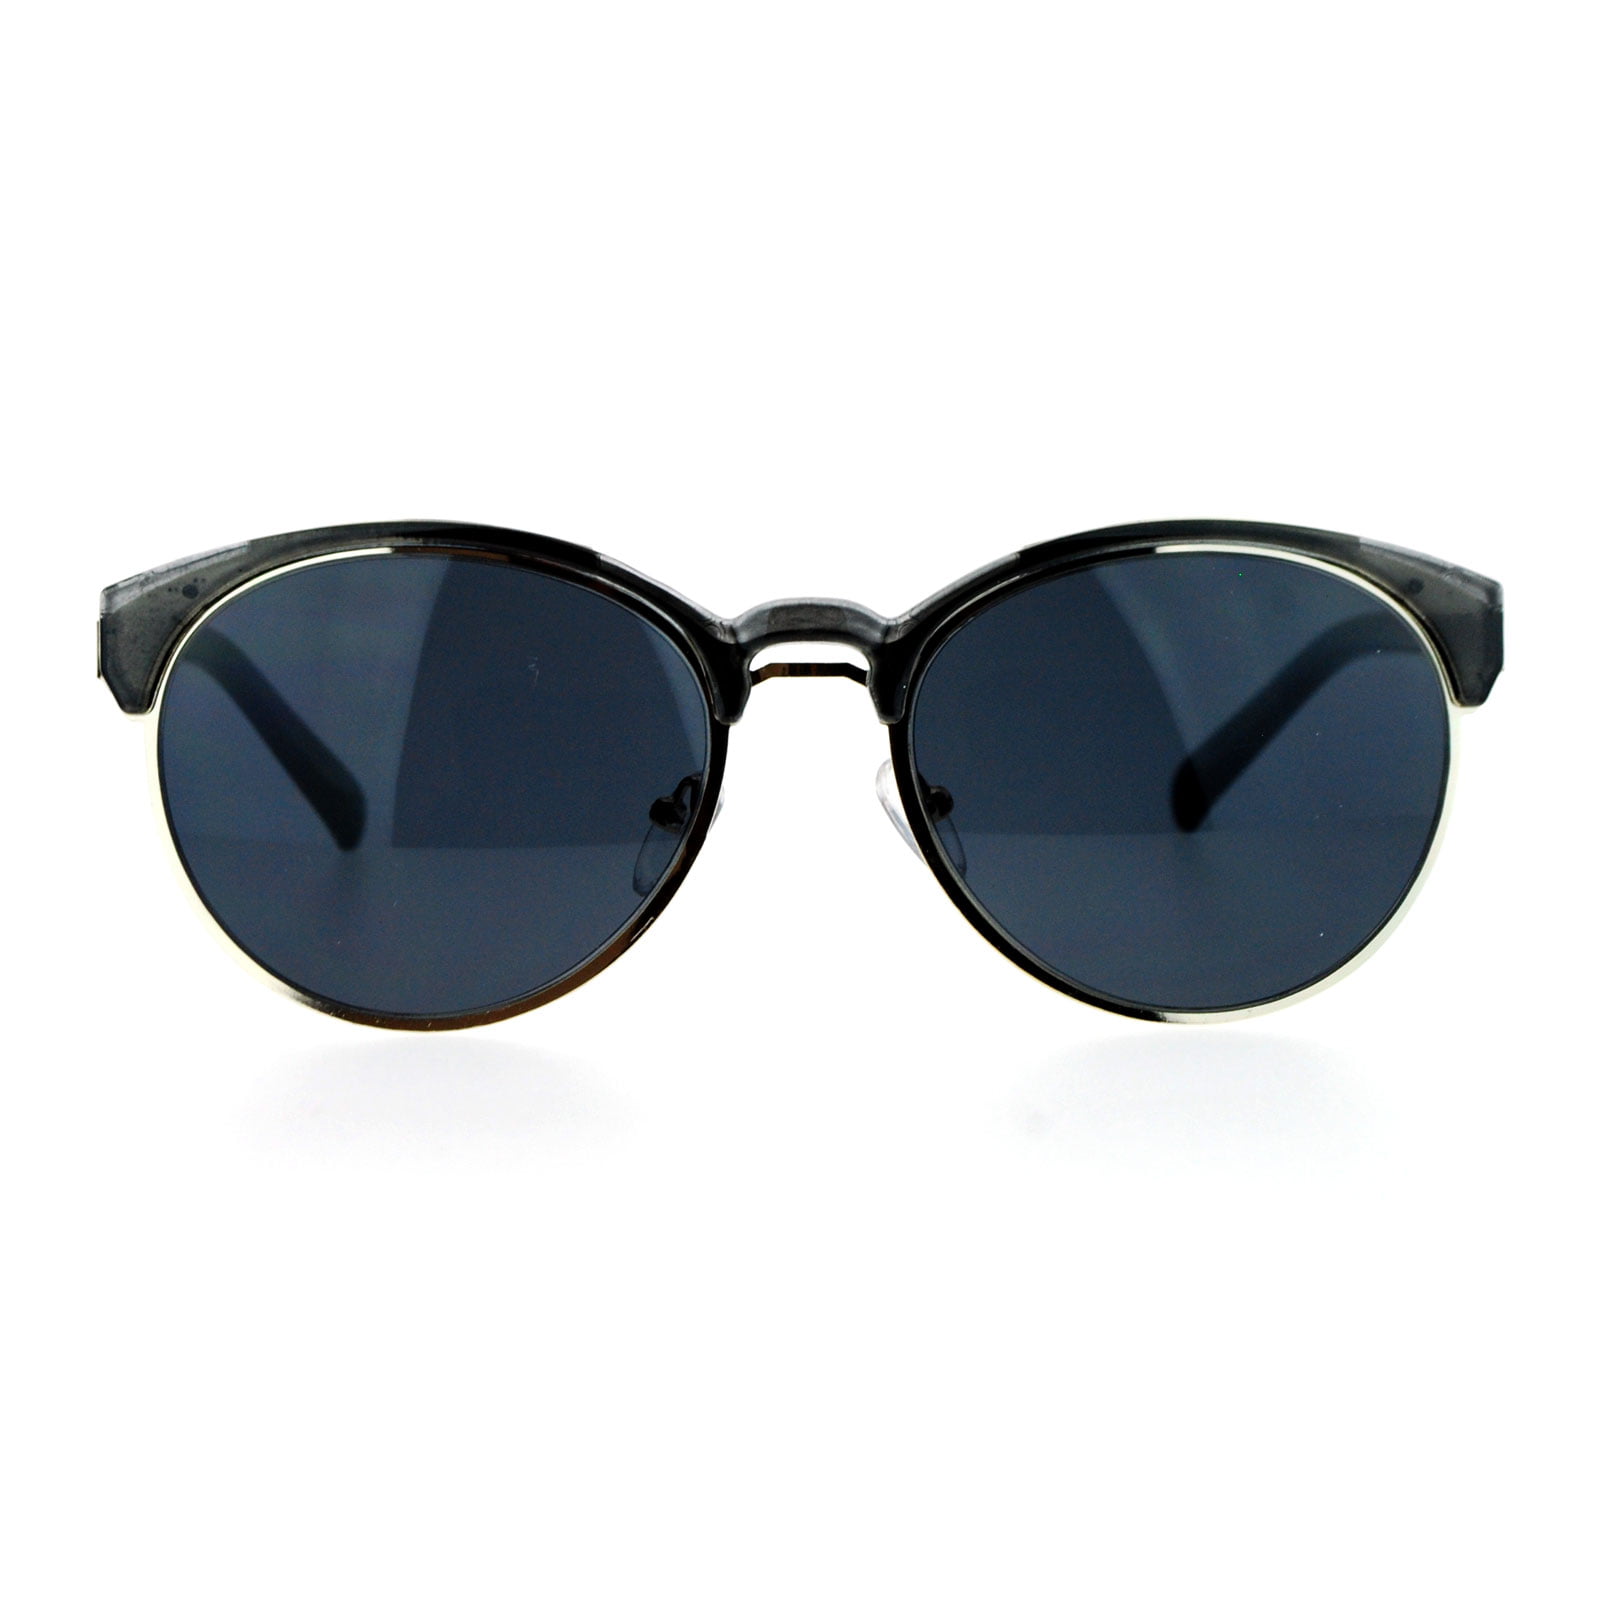 Sa106 Sa106 Retro Vintage Style Half Rim Womens Sunglasses Shinny Black